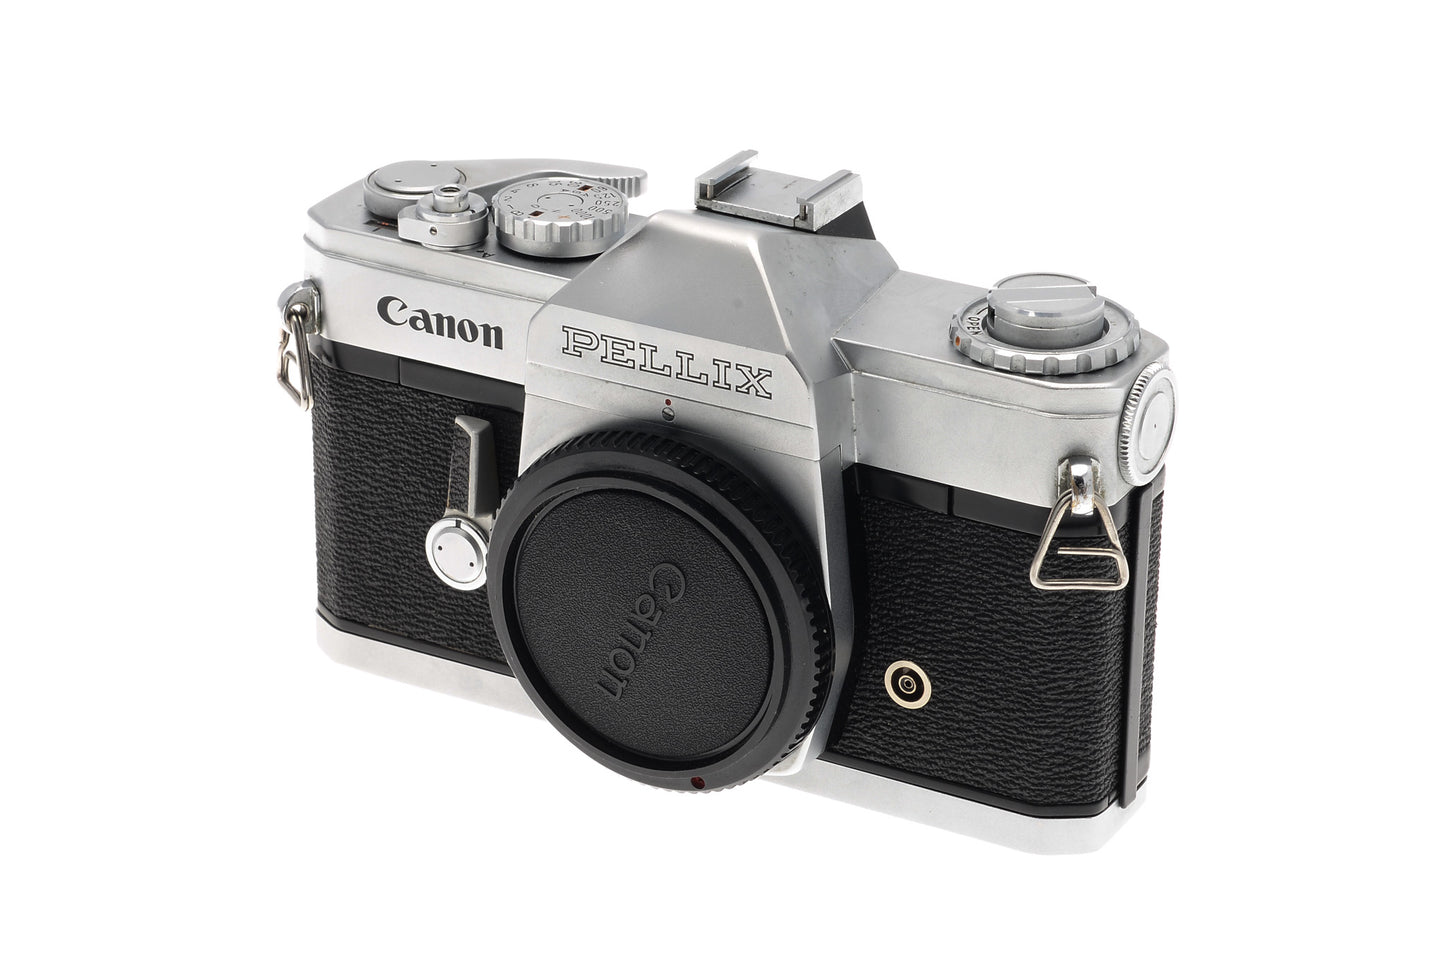 Canon Pellix - Camera